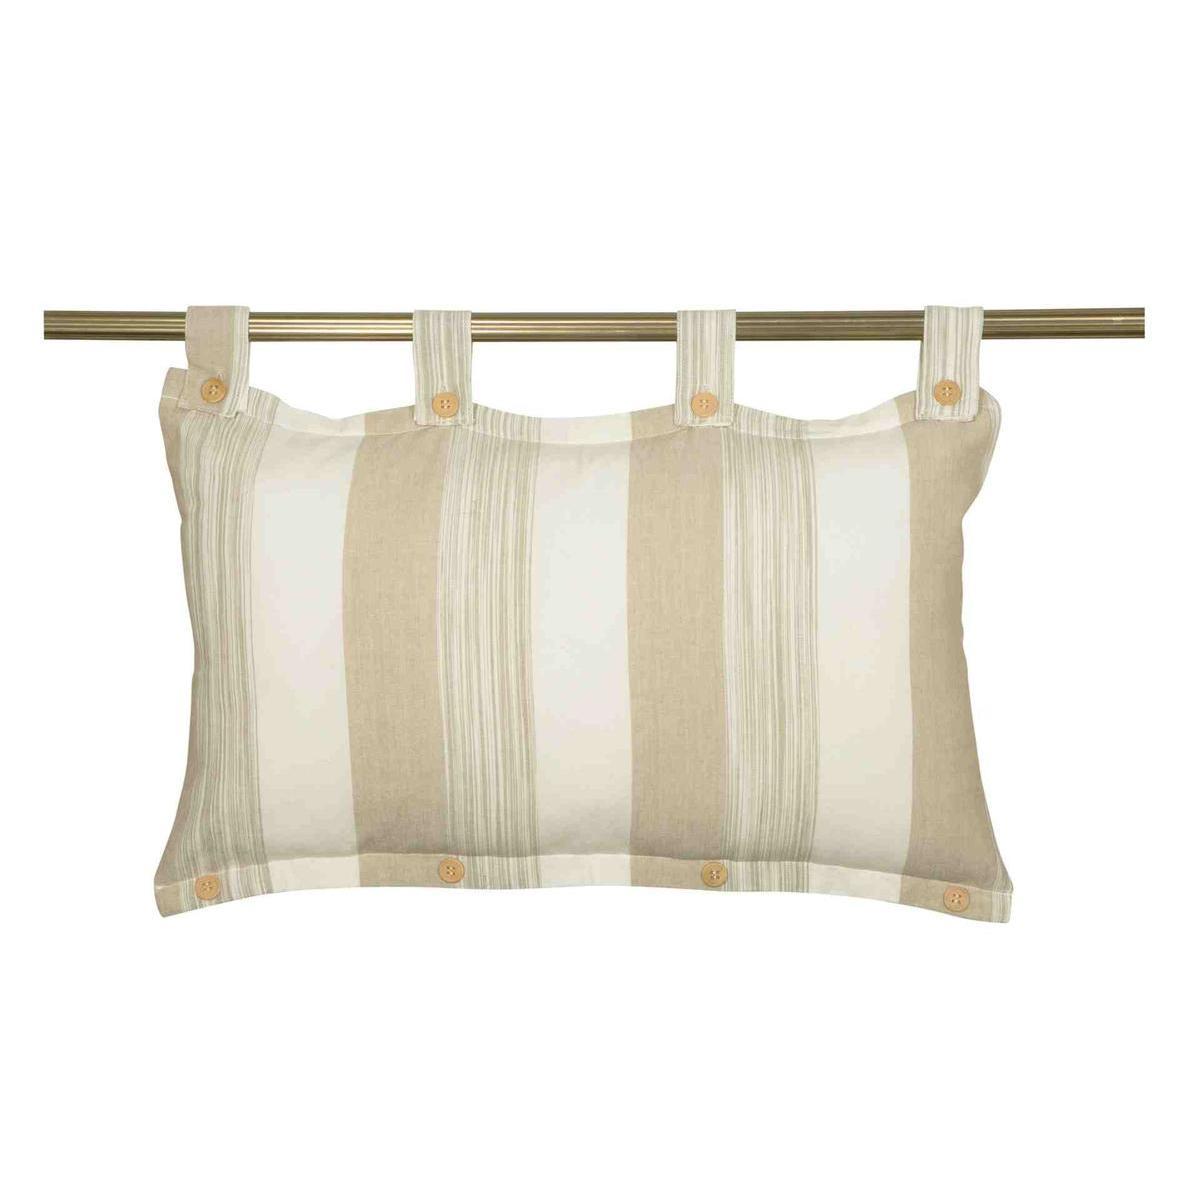 Tête de lit Concept - 45 x 70 cm - Beige, blanc